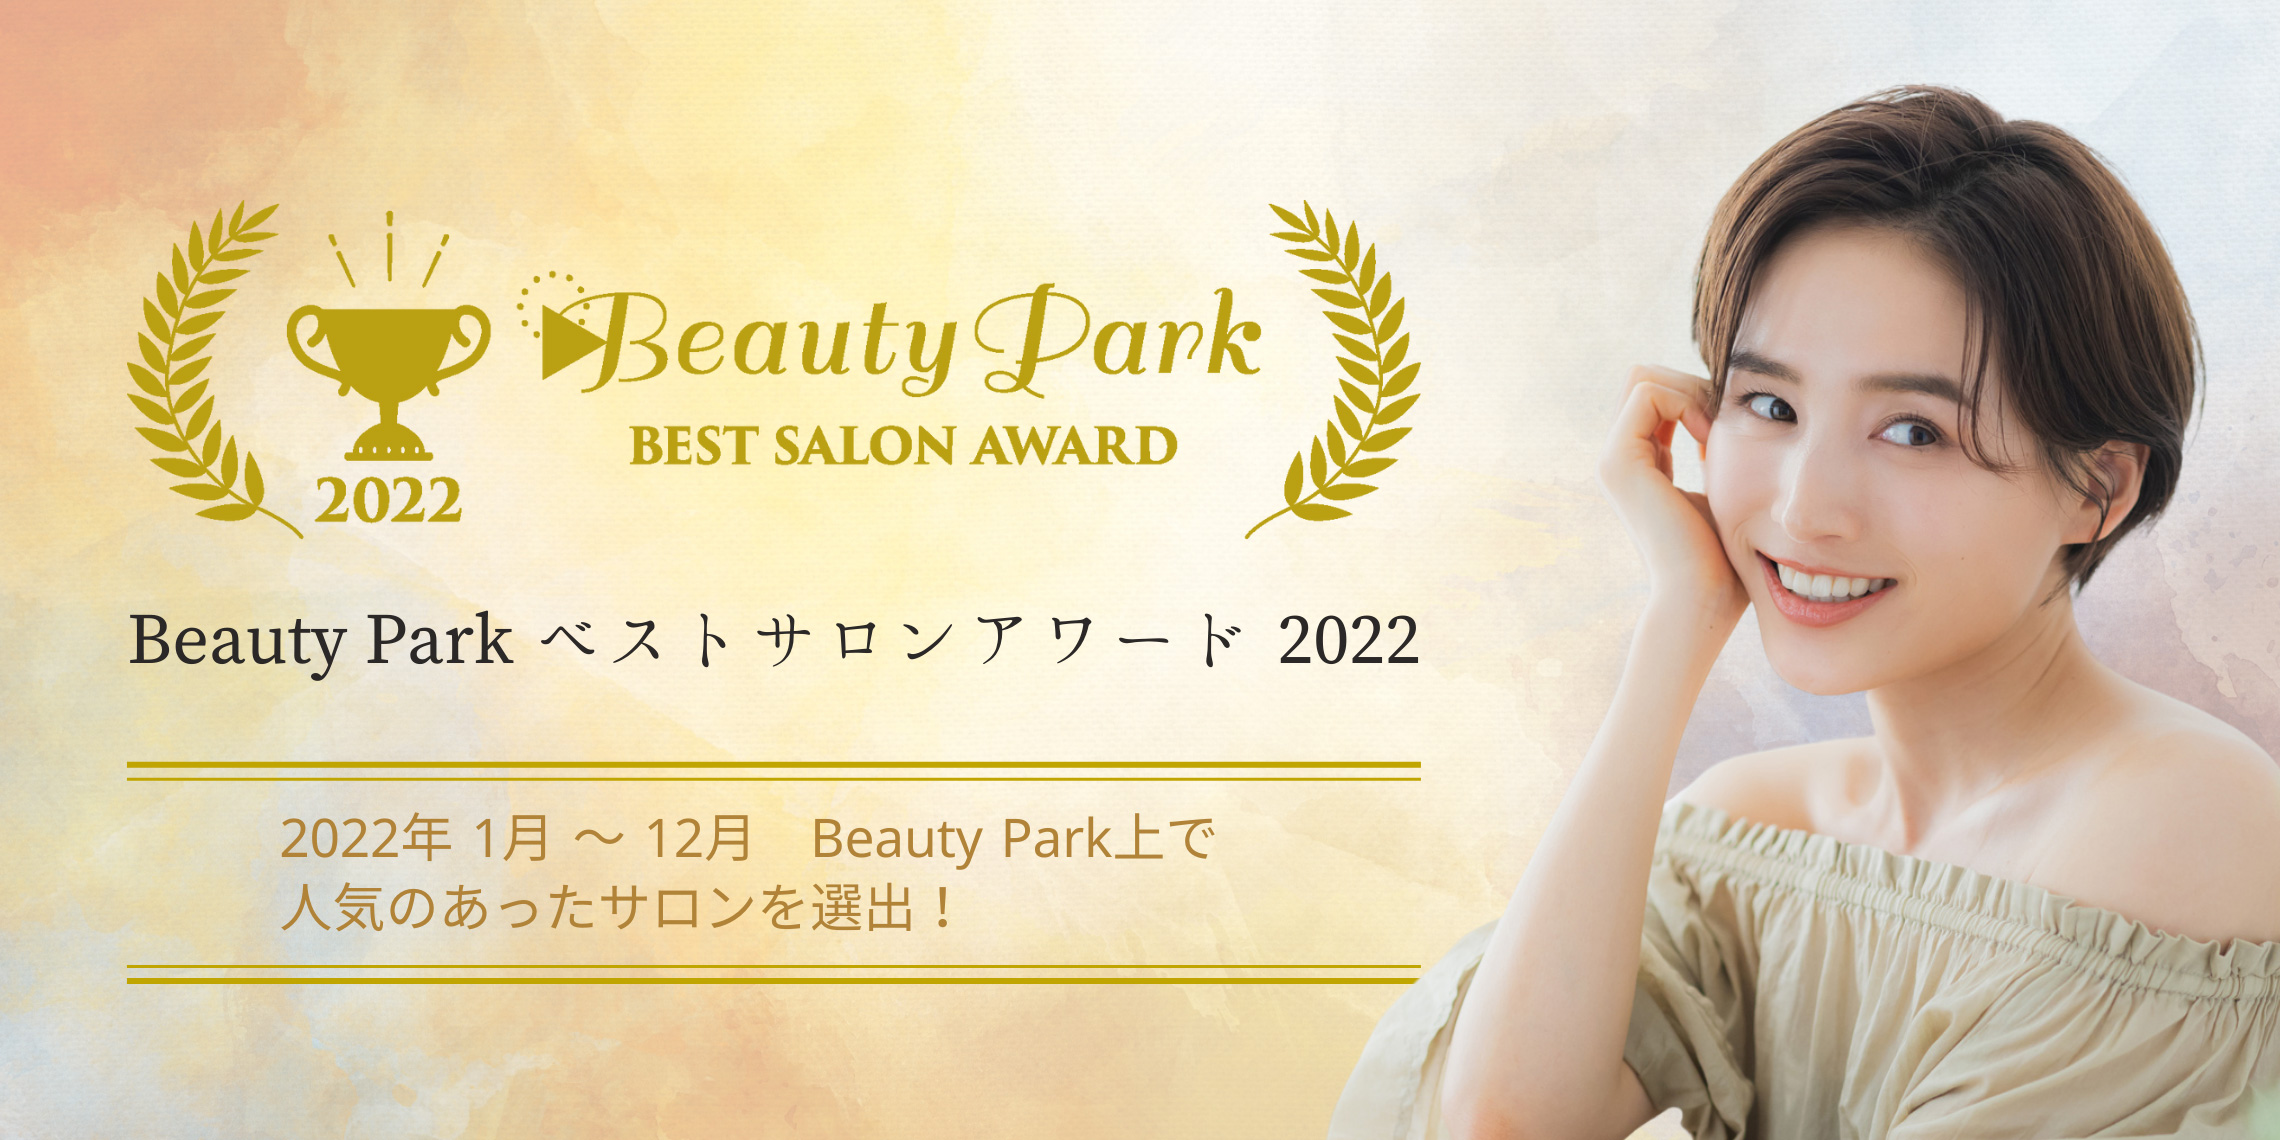 Beauty Park ベストサロンアワード 2022